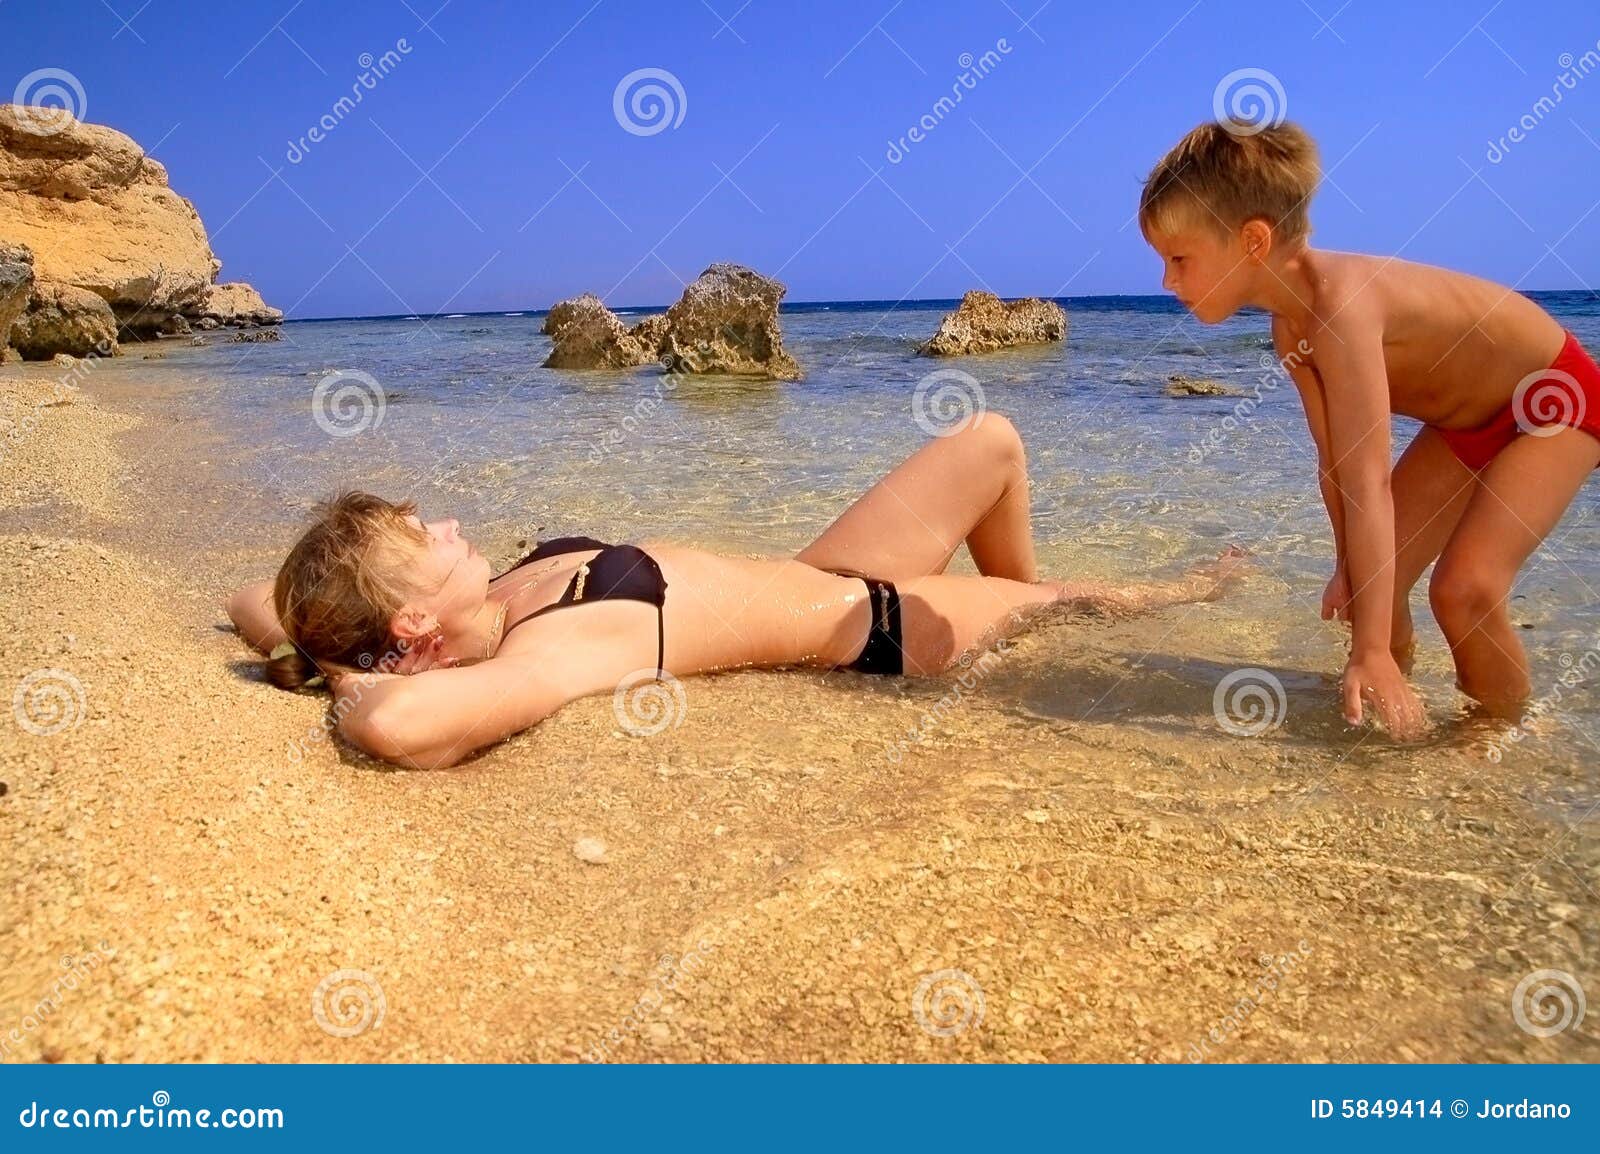 нудиский пляж с голыми детьми фото 118